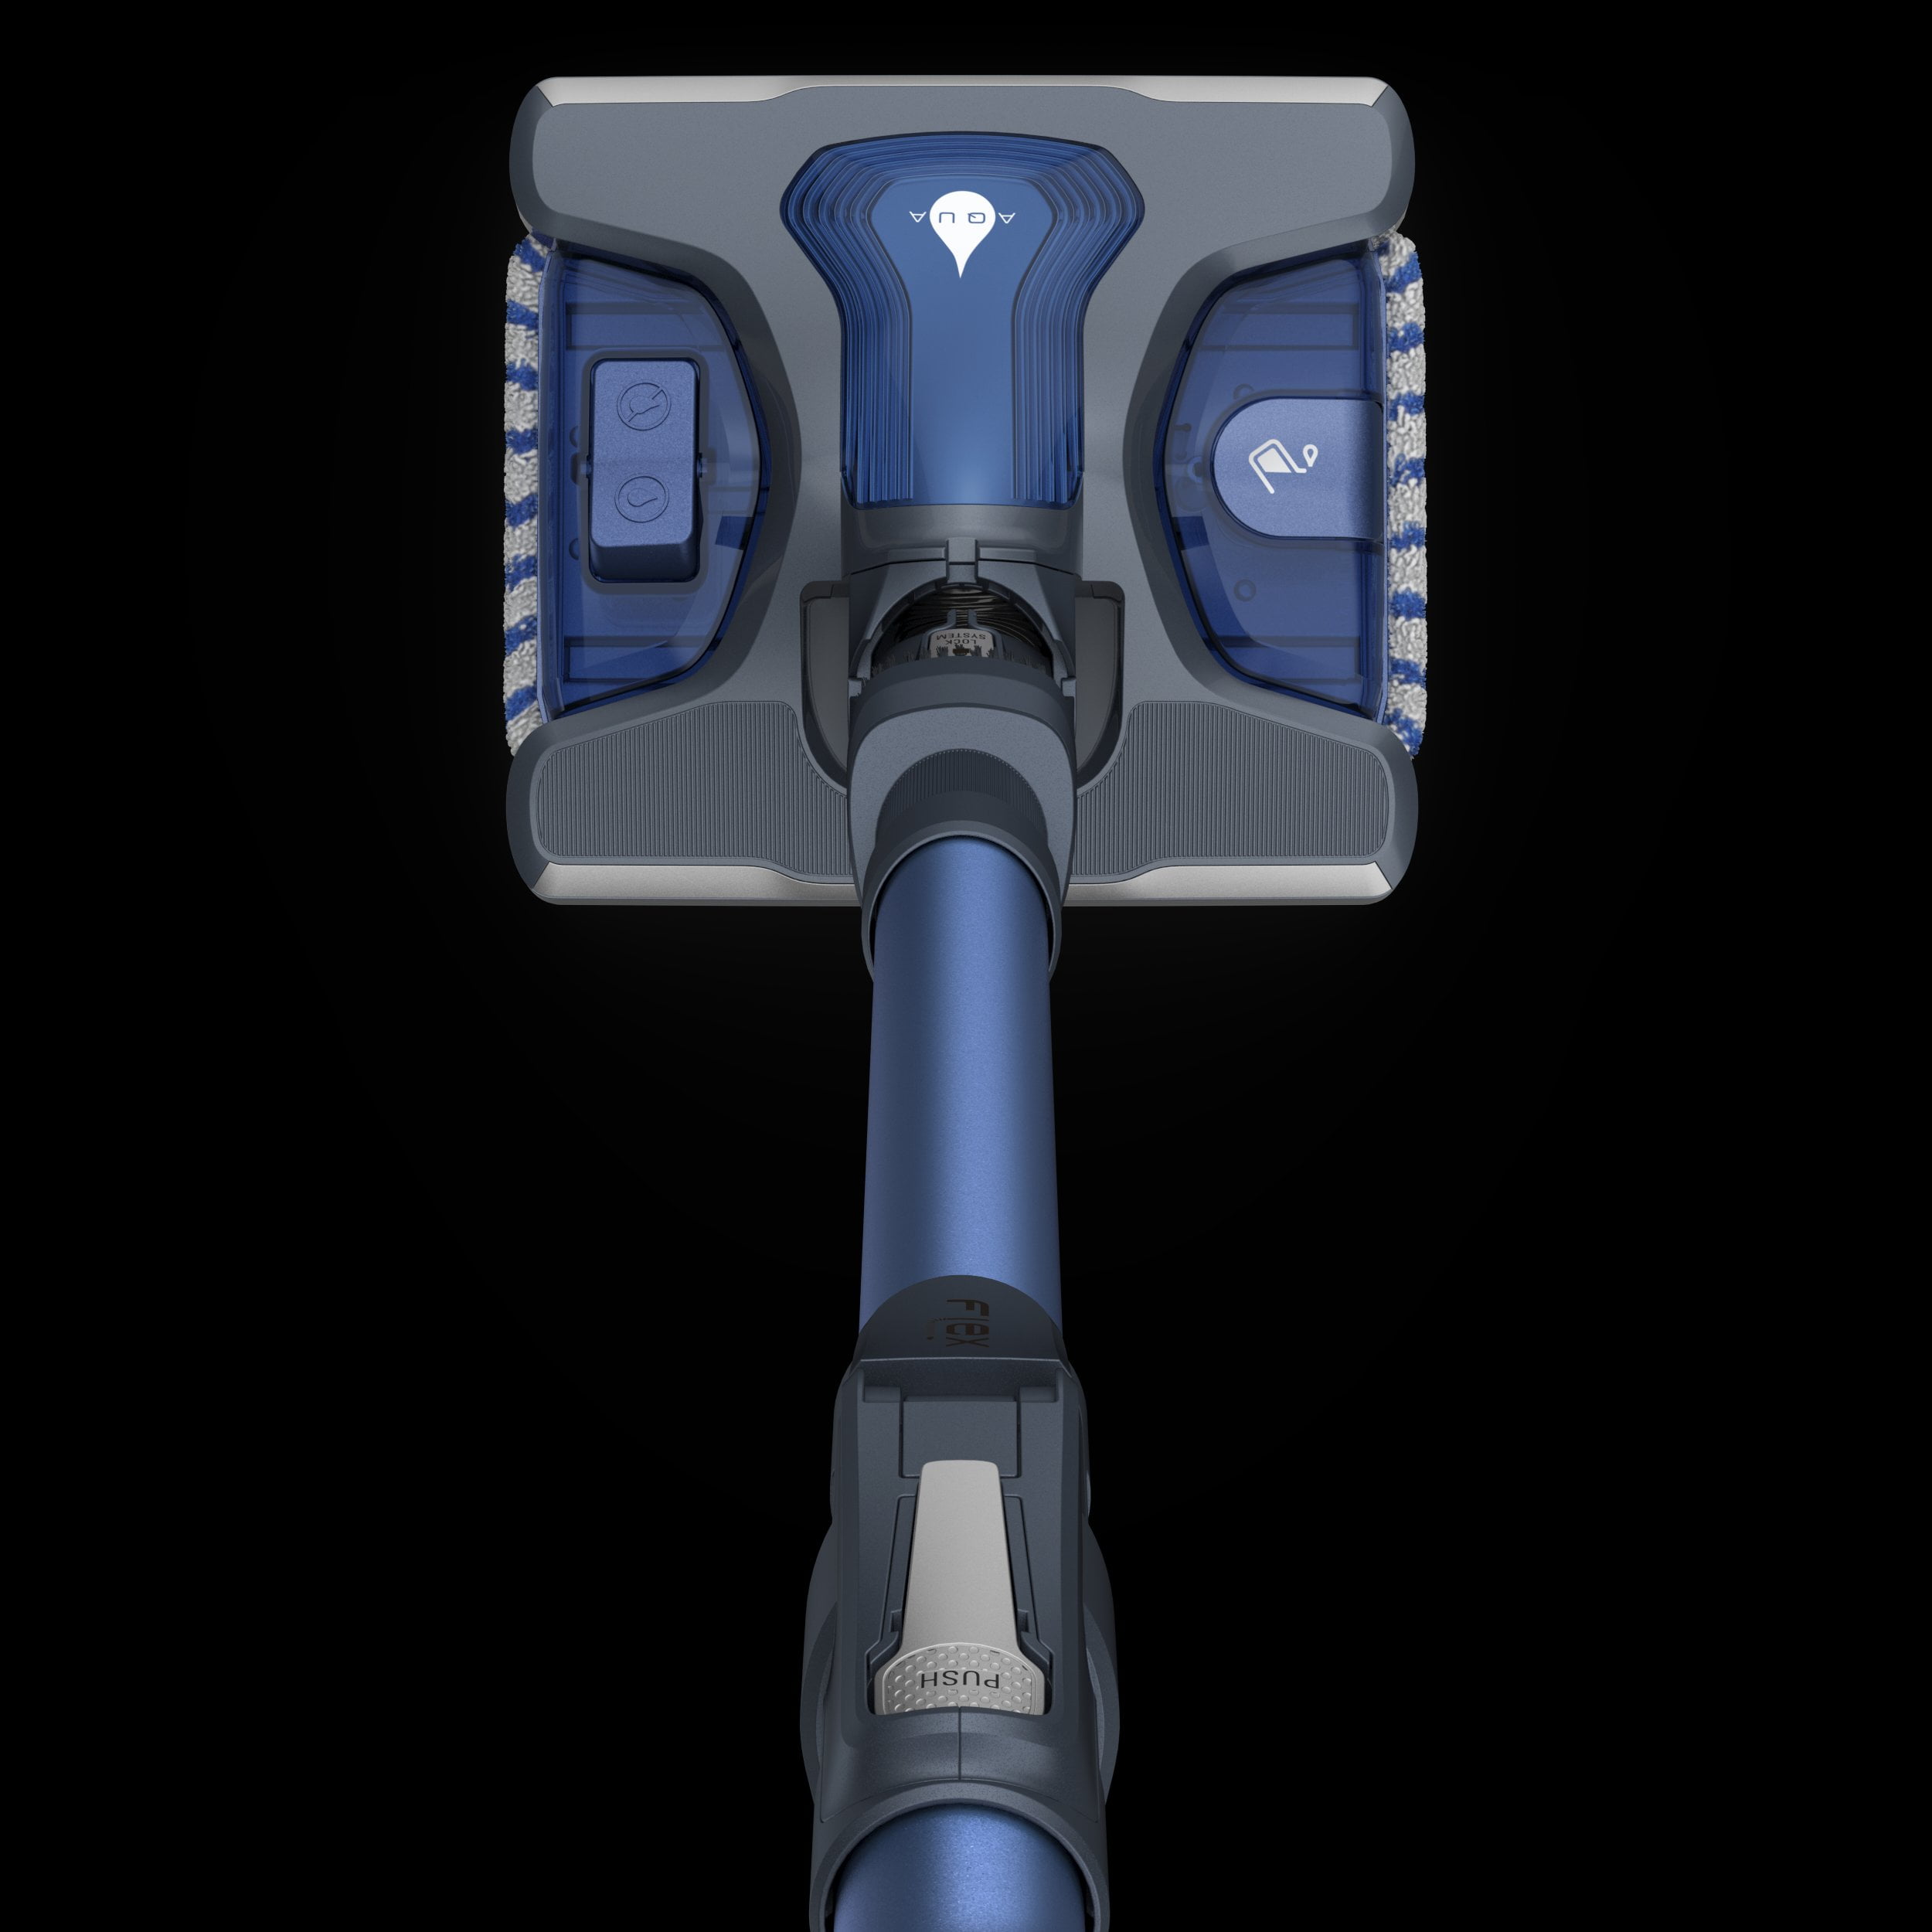 Tefal X-Force Flex 8.60 Aqua Series รุ่นใหม่ล่าสุด ดูดฝุ่นพร้อมถูในครั้งเดียว ด้วย Aqua Head